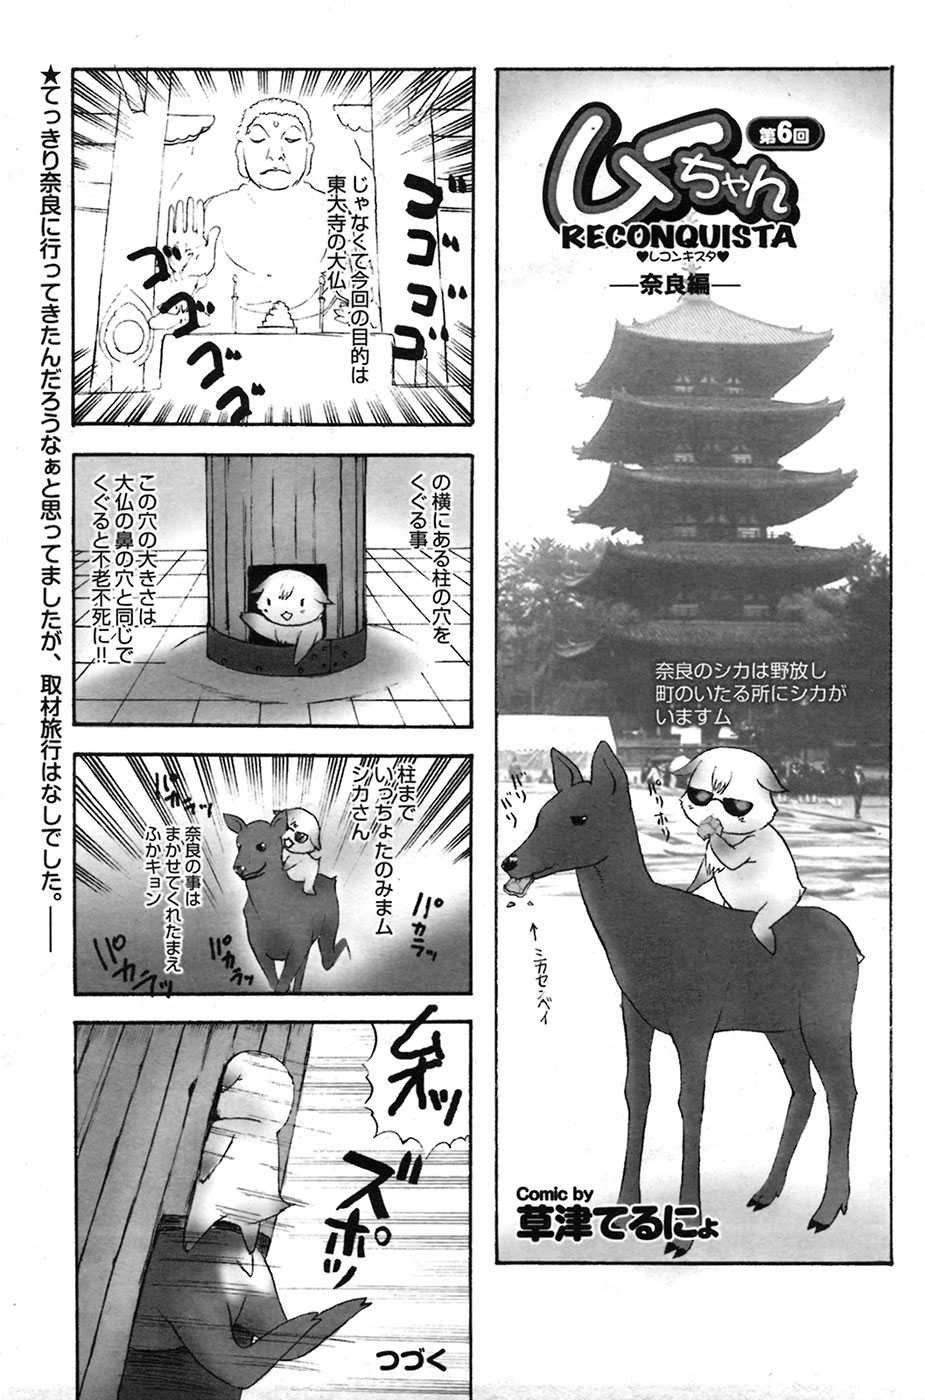 Comic Purumero 2009-06 Vol.30 COMIC プルメロ 2009年06月号 Vol.30